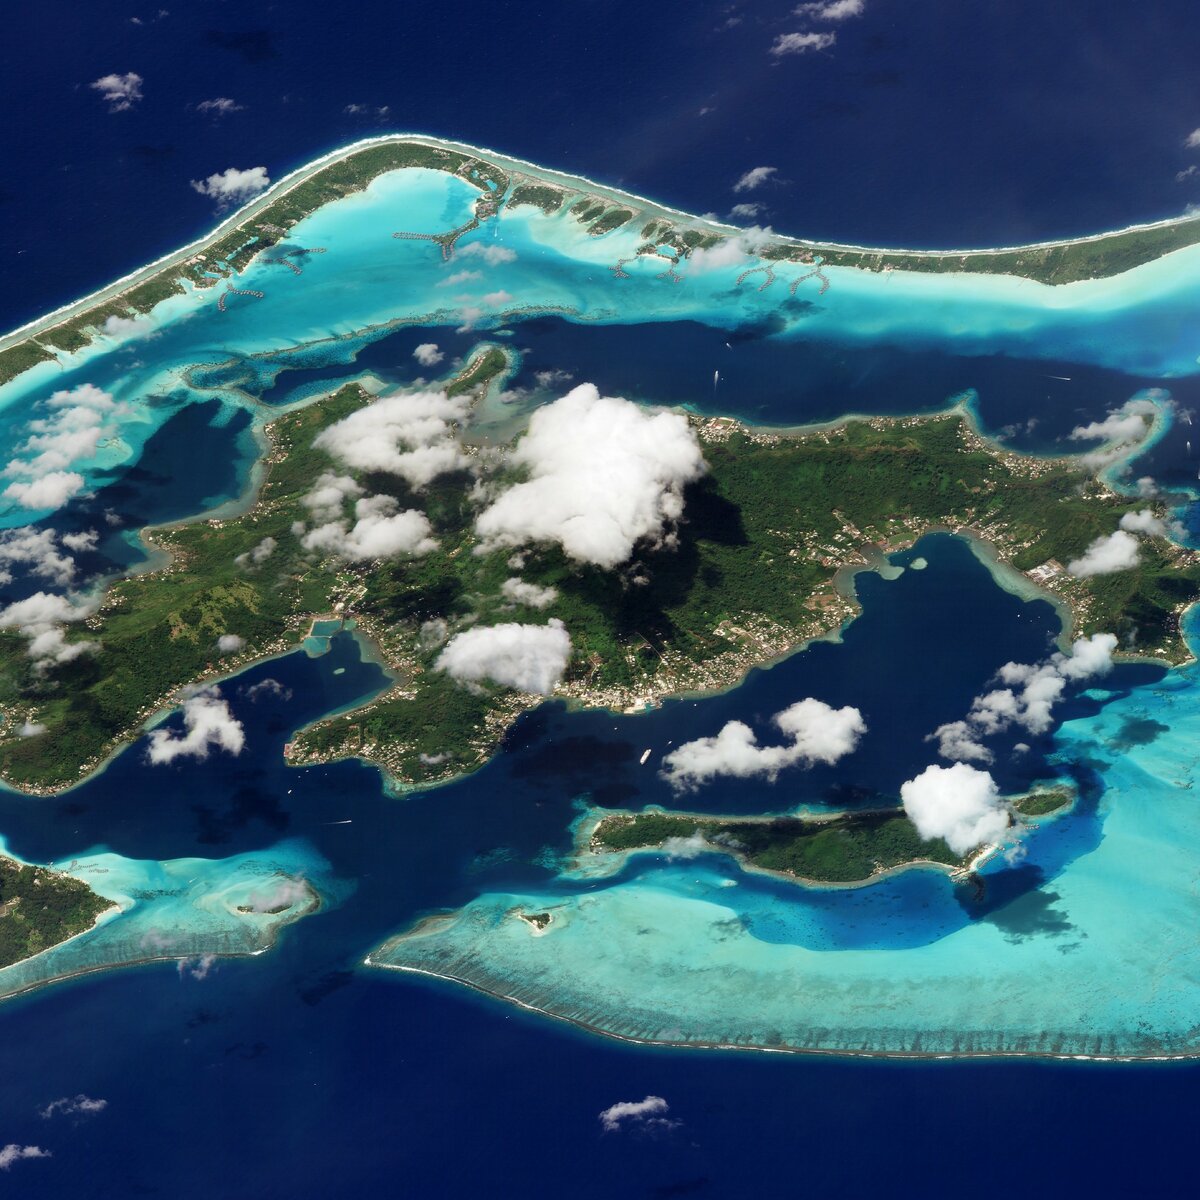 Бора-Бора, Французская Полинезия. 9 марта 2018 года. Изображение ©2018 Planet Labs, Inc. cc-by-sa 4.0.